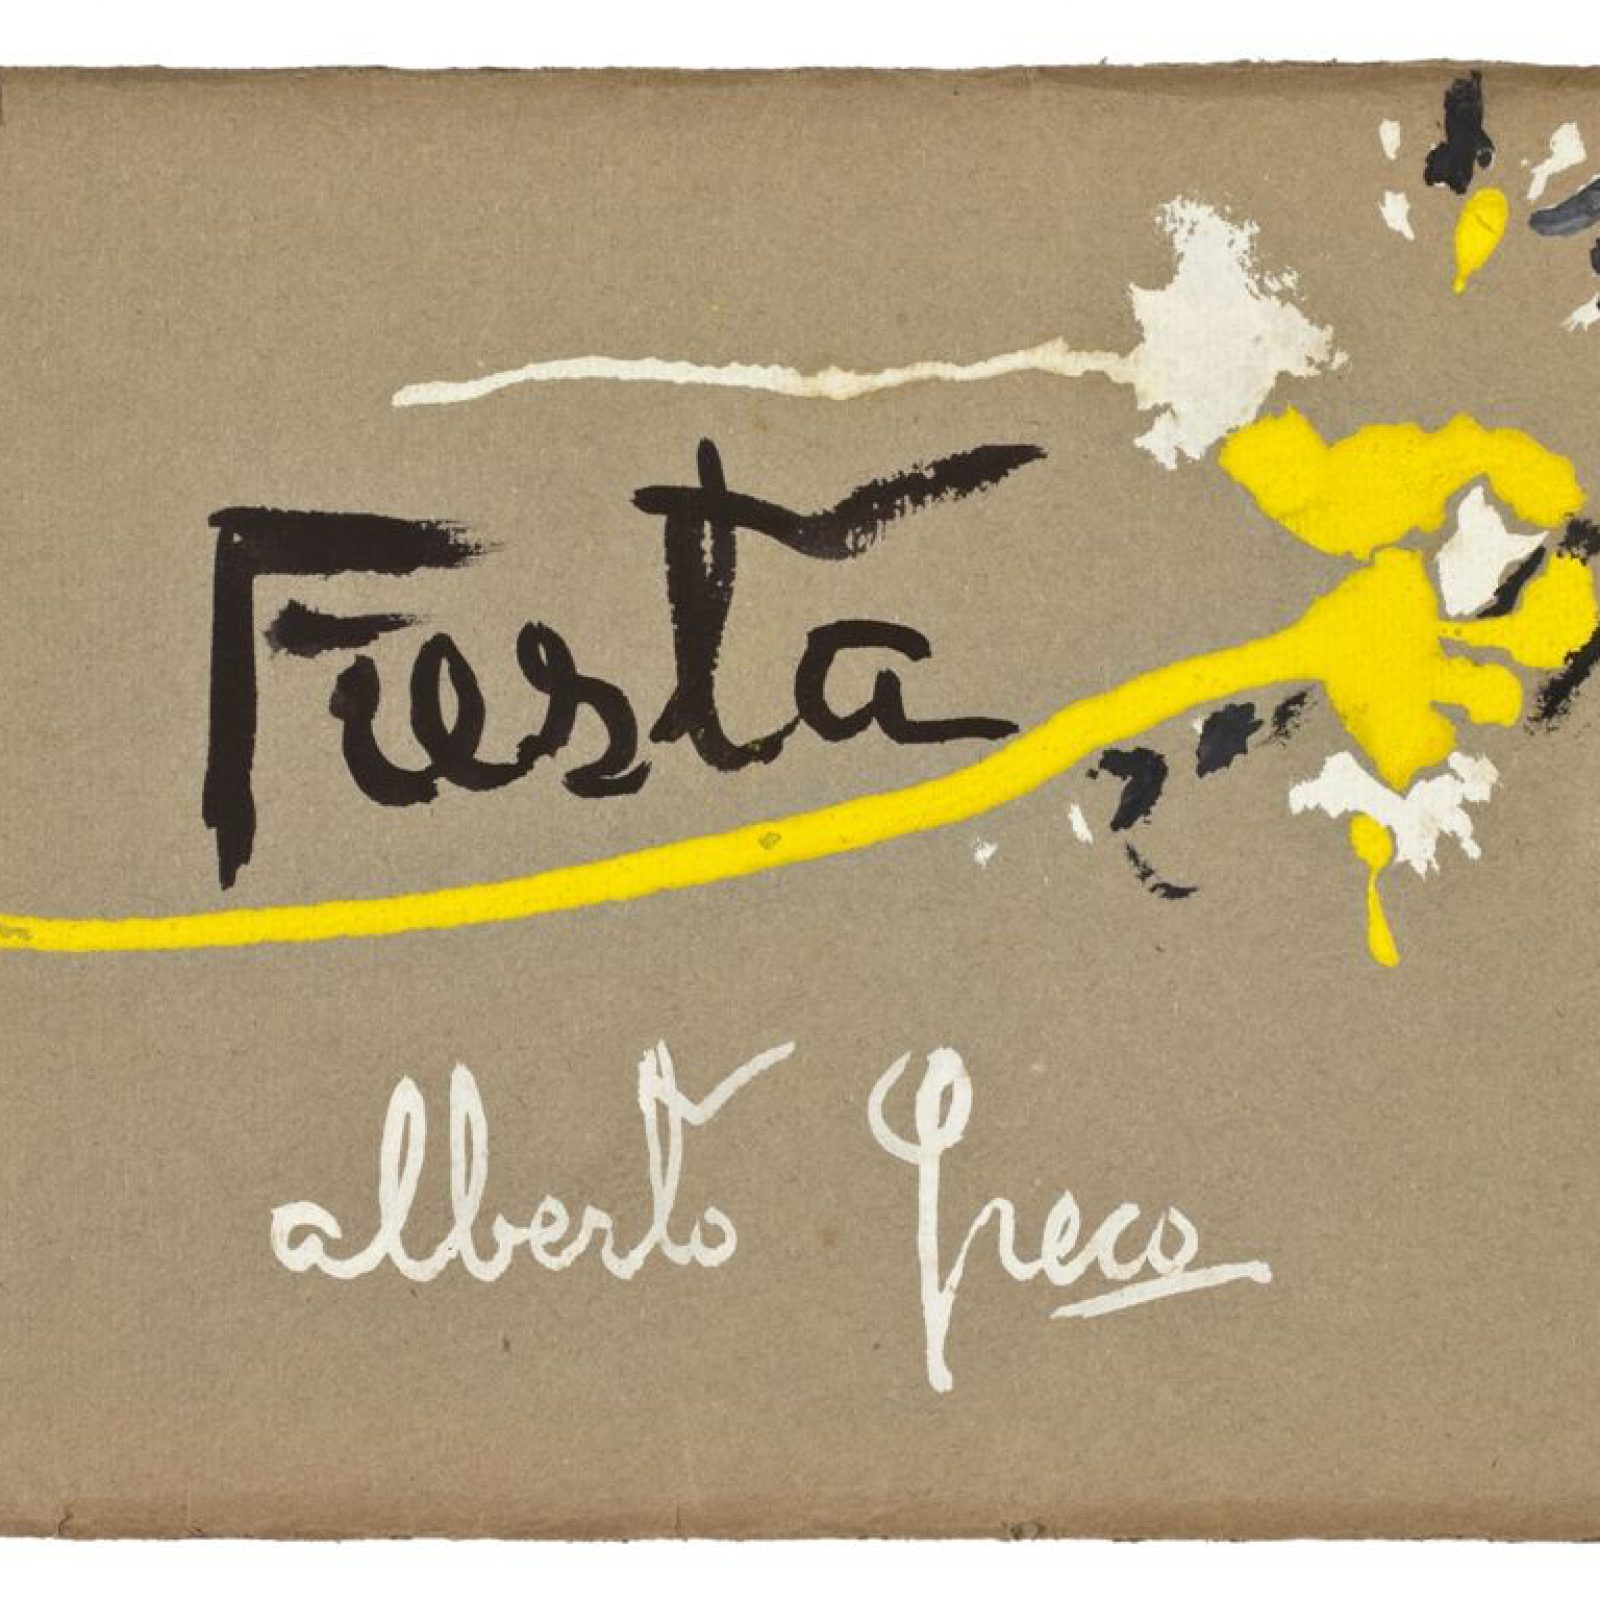 Alberto Greco, Fiesta, compilado de 32 carillas de 15,5 x 17,5 cm, tapa en tempera y esmalte sobre cartón, 1950. En Del Infinito